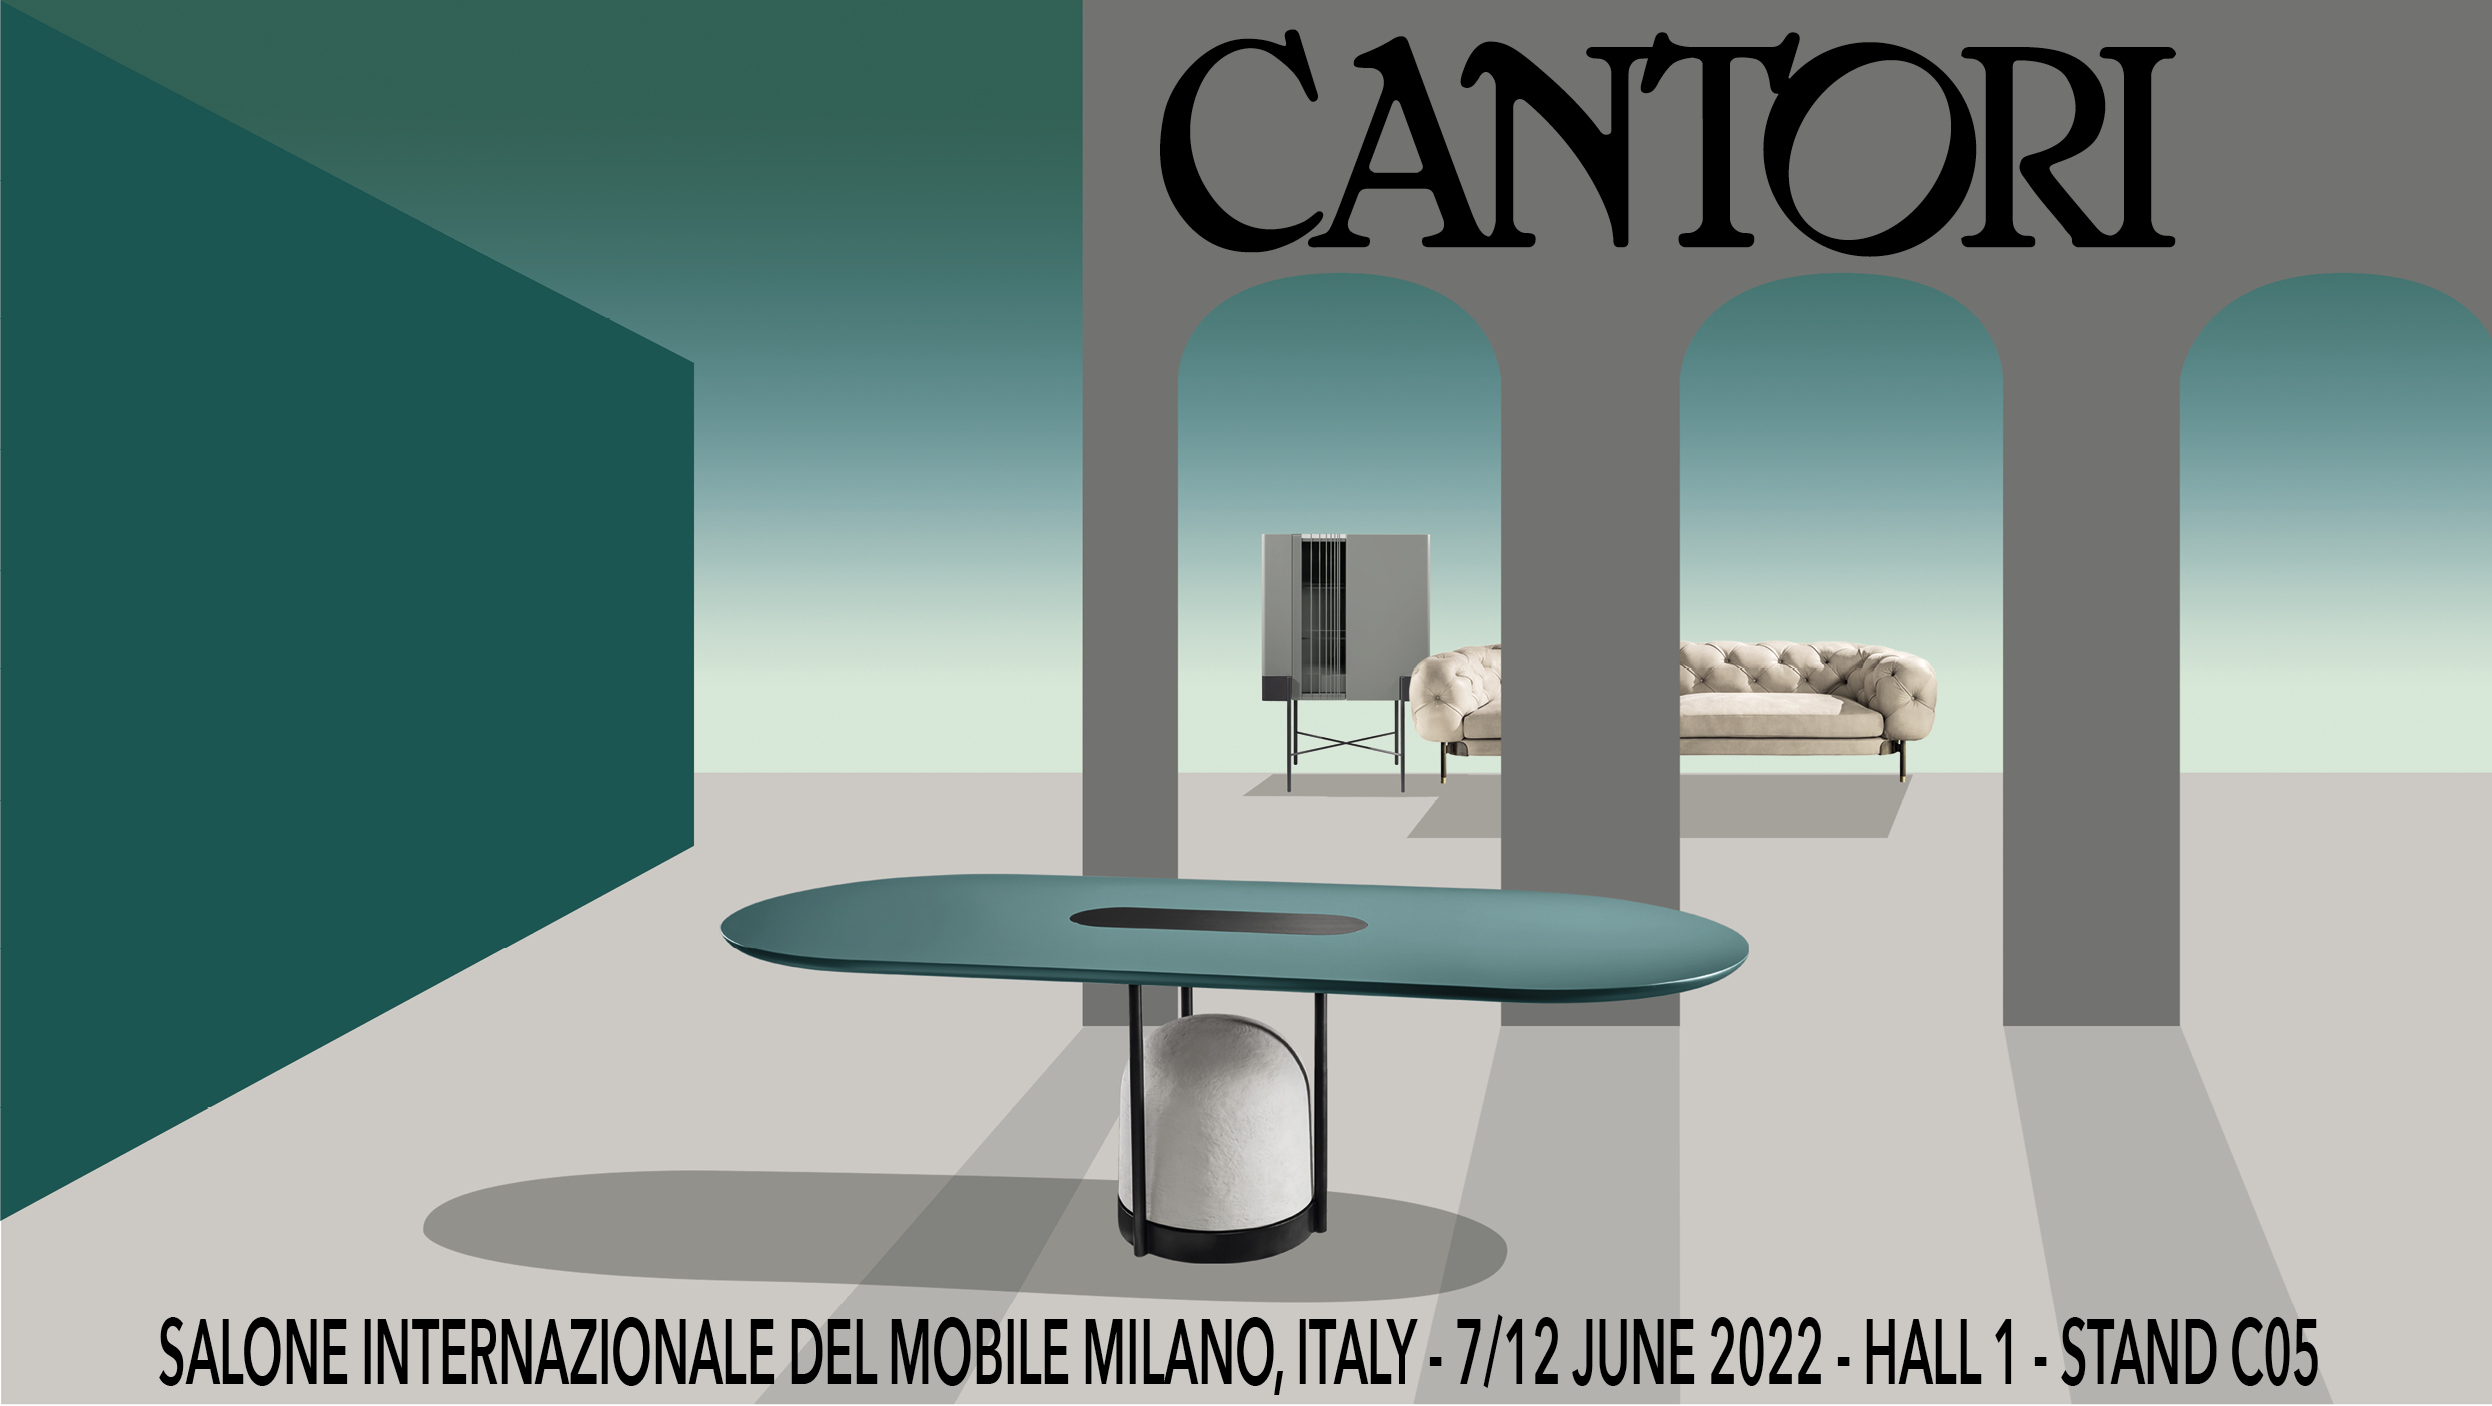 Cantori at Salone del Mobile of Milano 2022 - Cantori